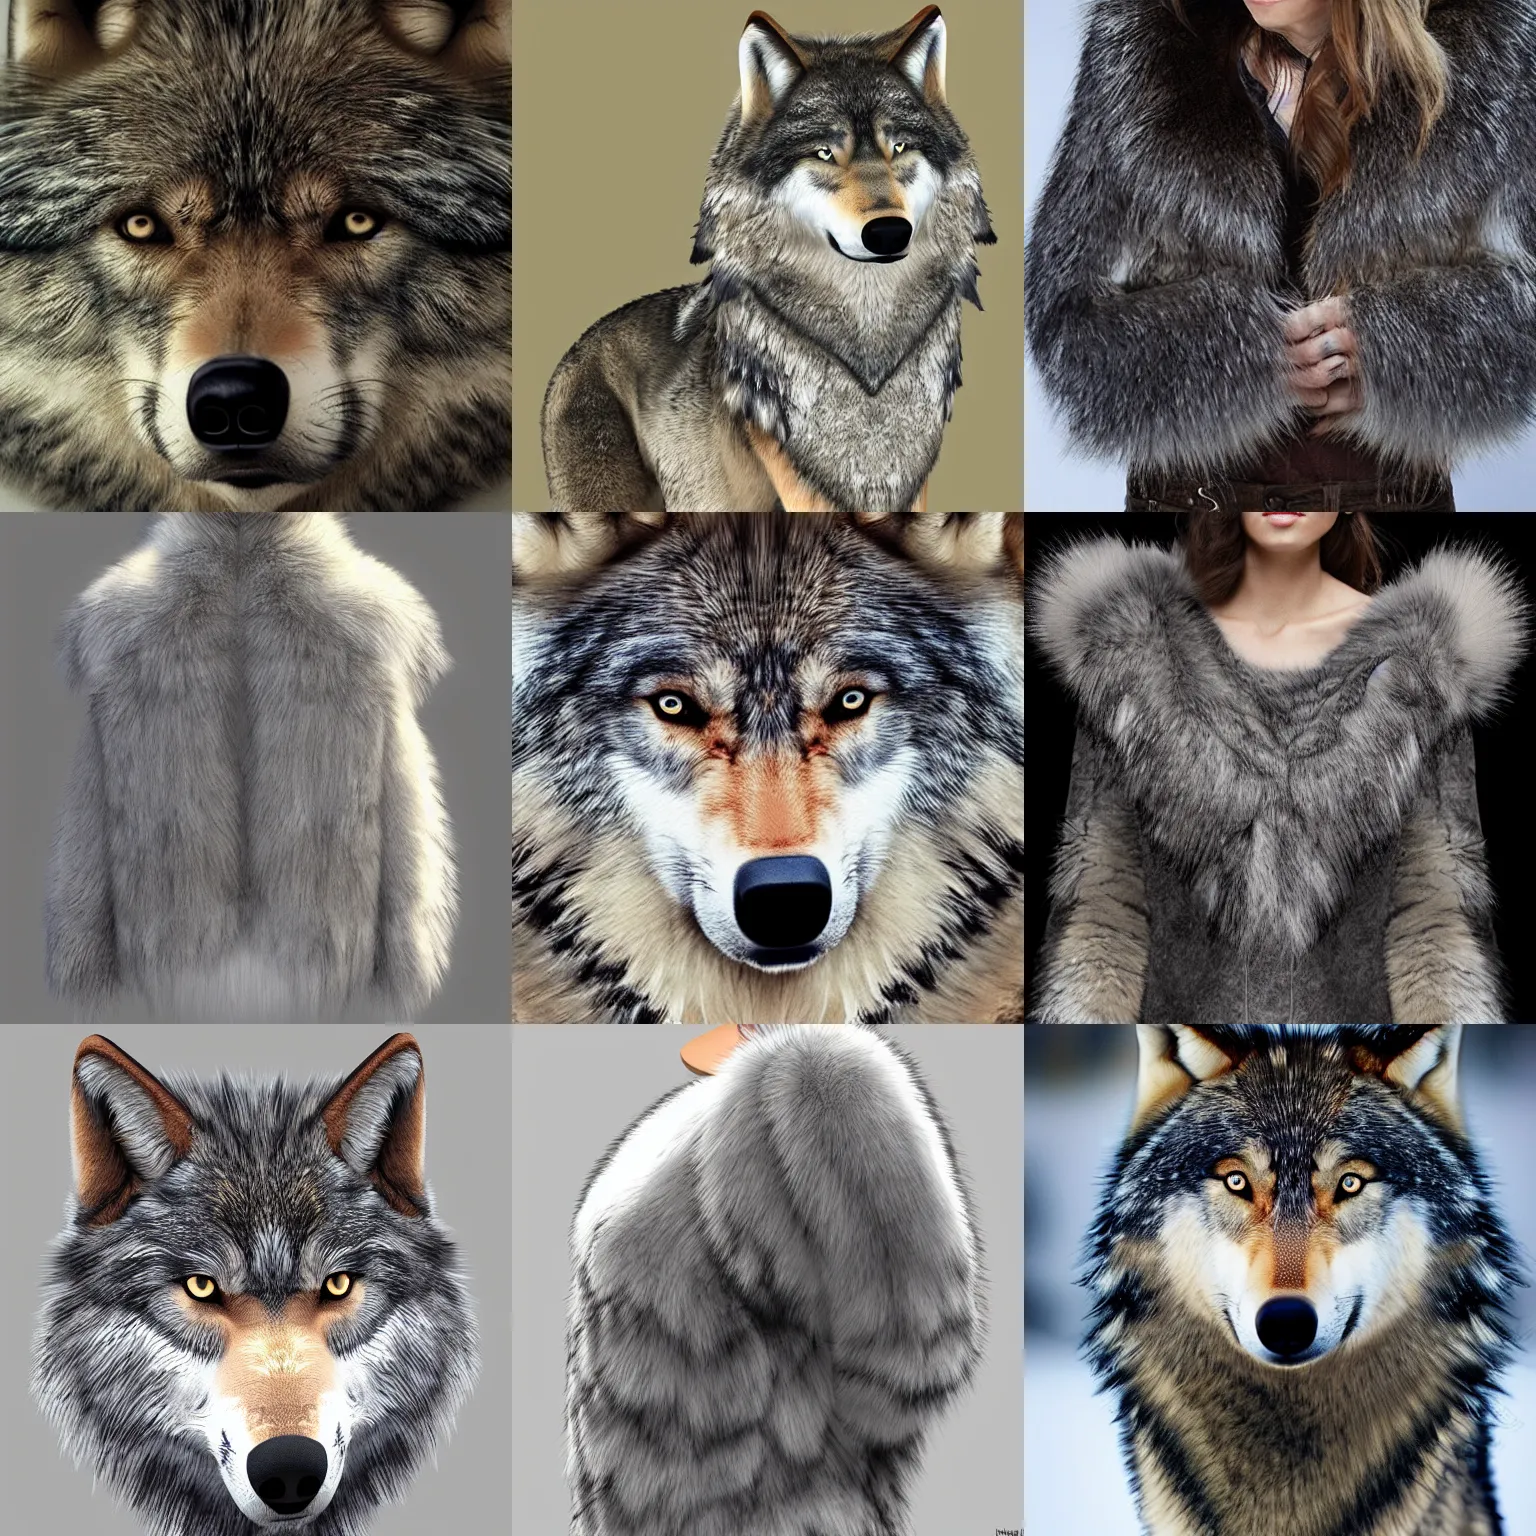 wolf fur texture